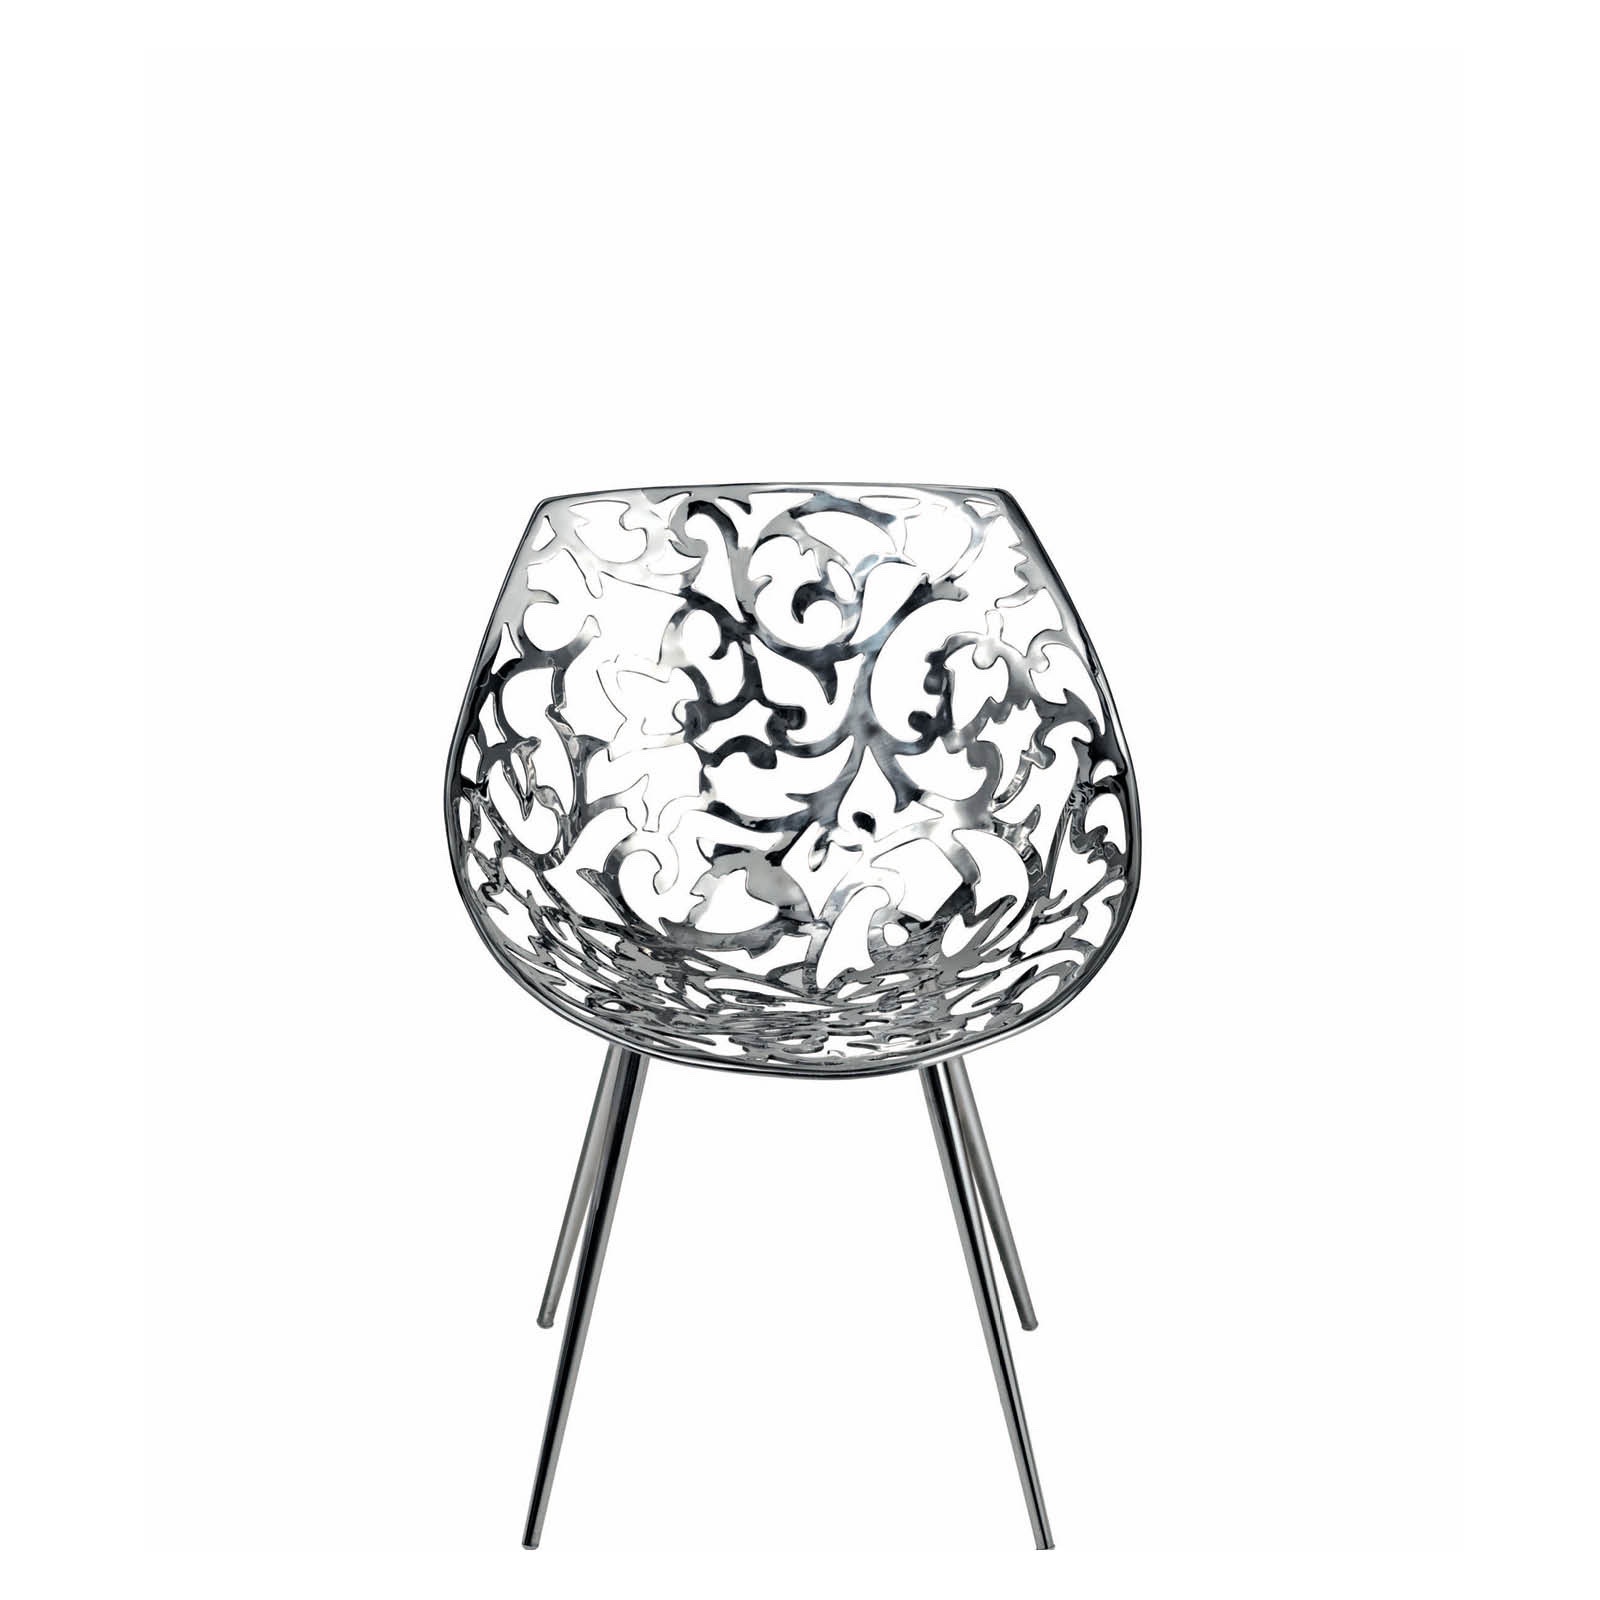 【官方授权】意大利Driade椅子MISS LACY限量款金属餐椅休闲椅潮-图3